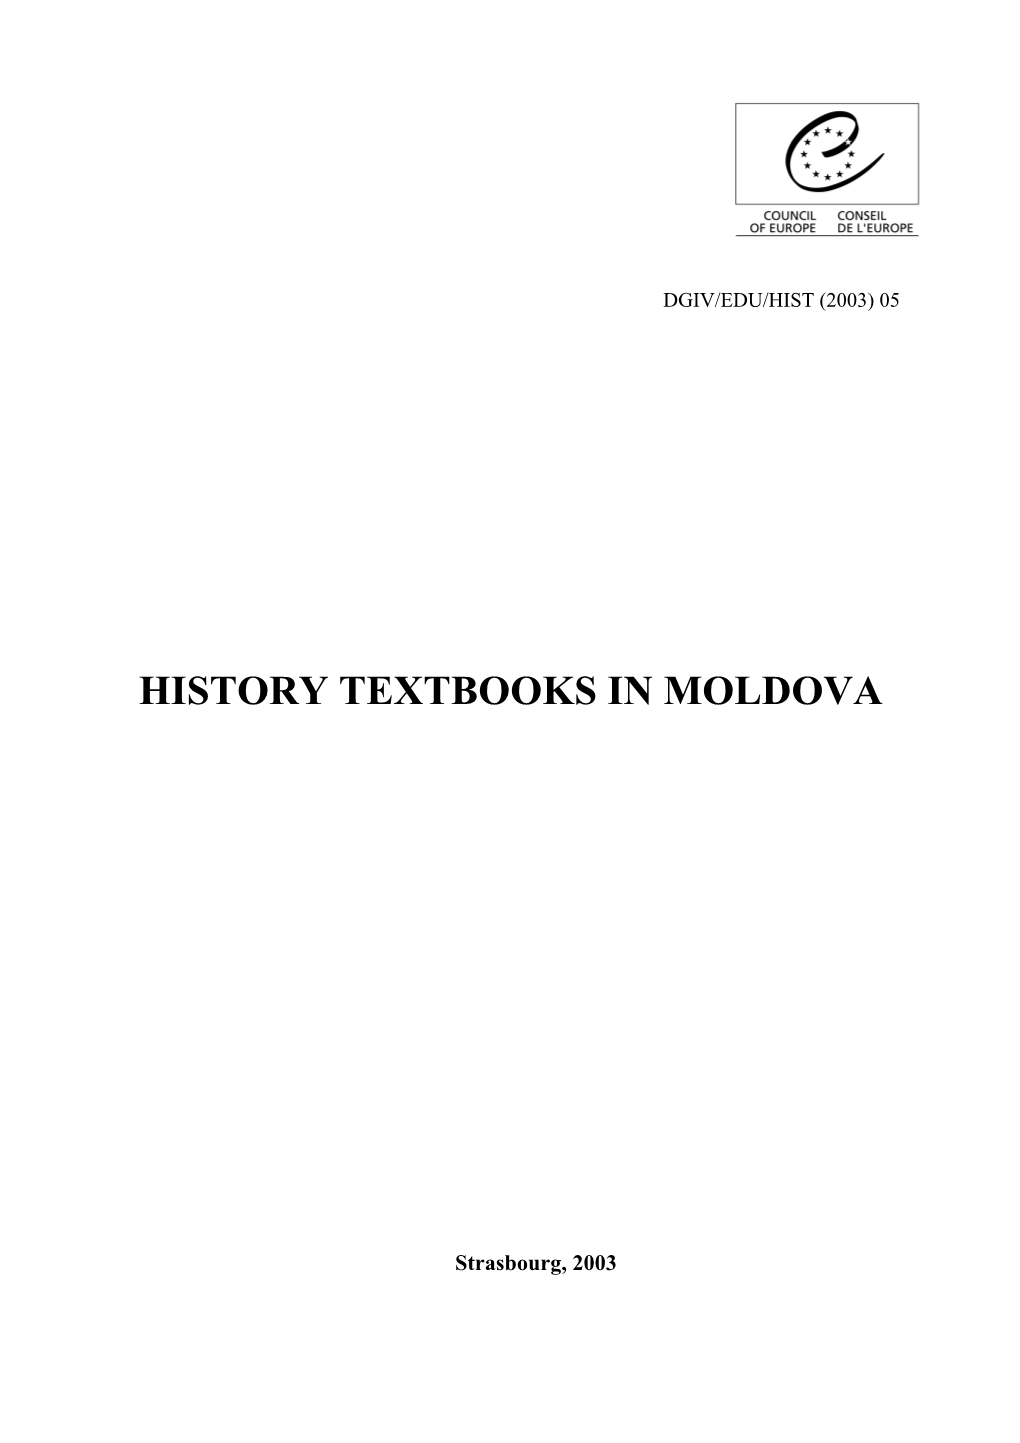 History Textbooks in Moldova